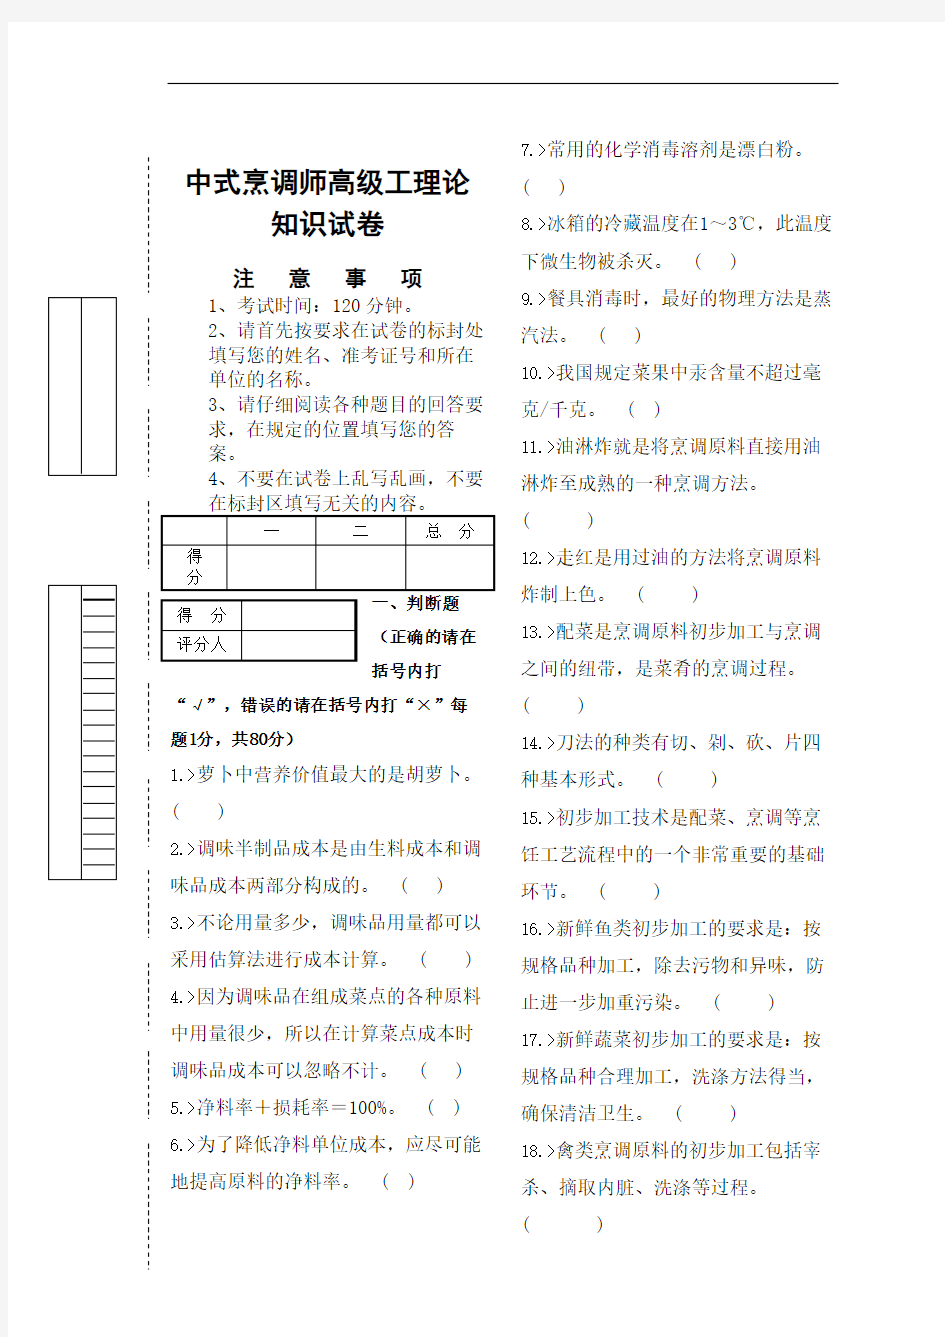 中式烹调师初级技能鉴定试题完整版